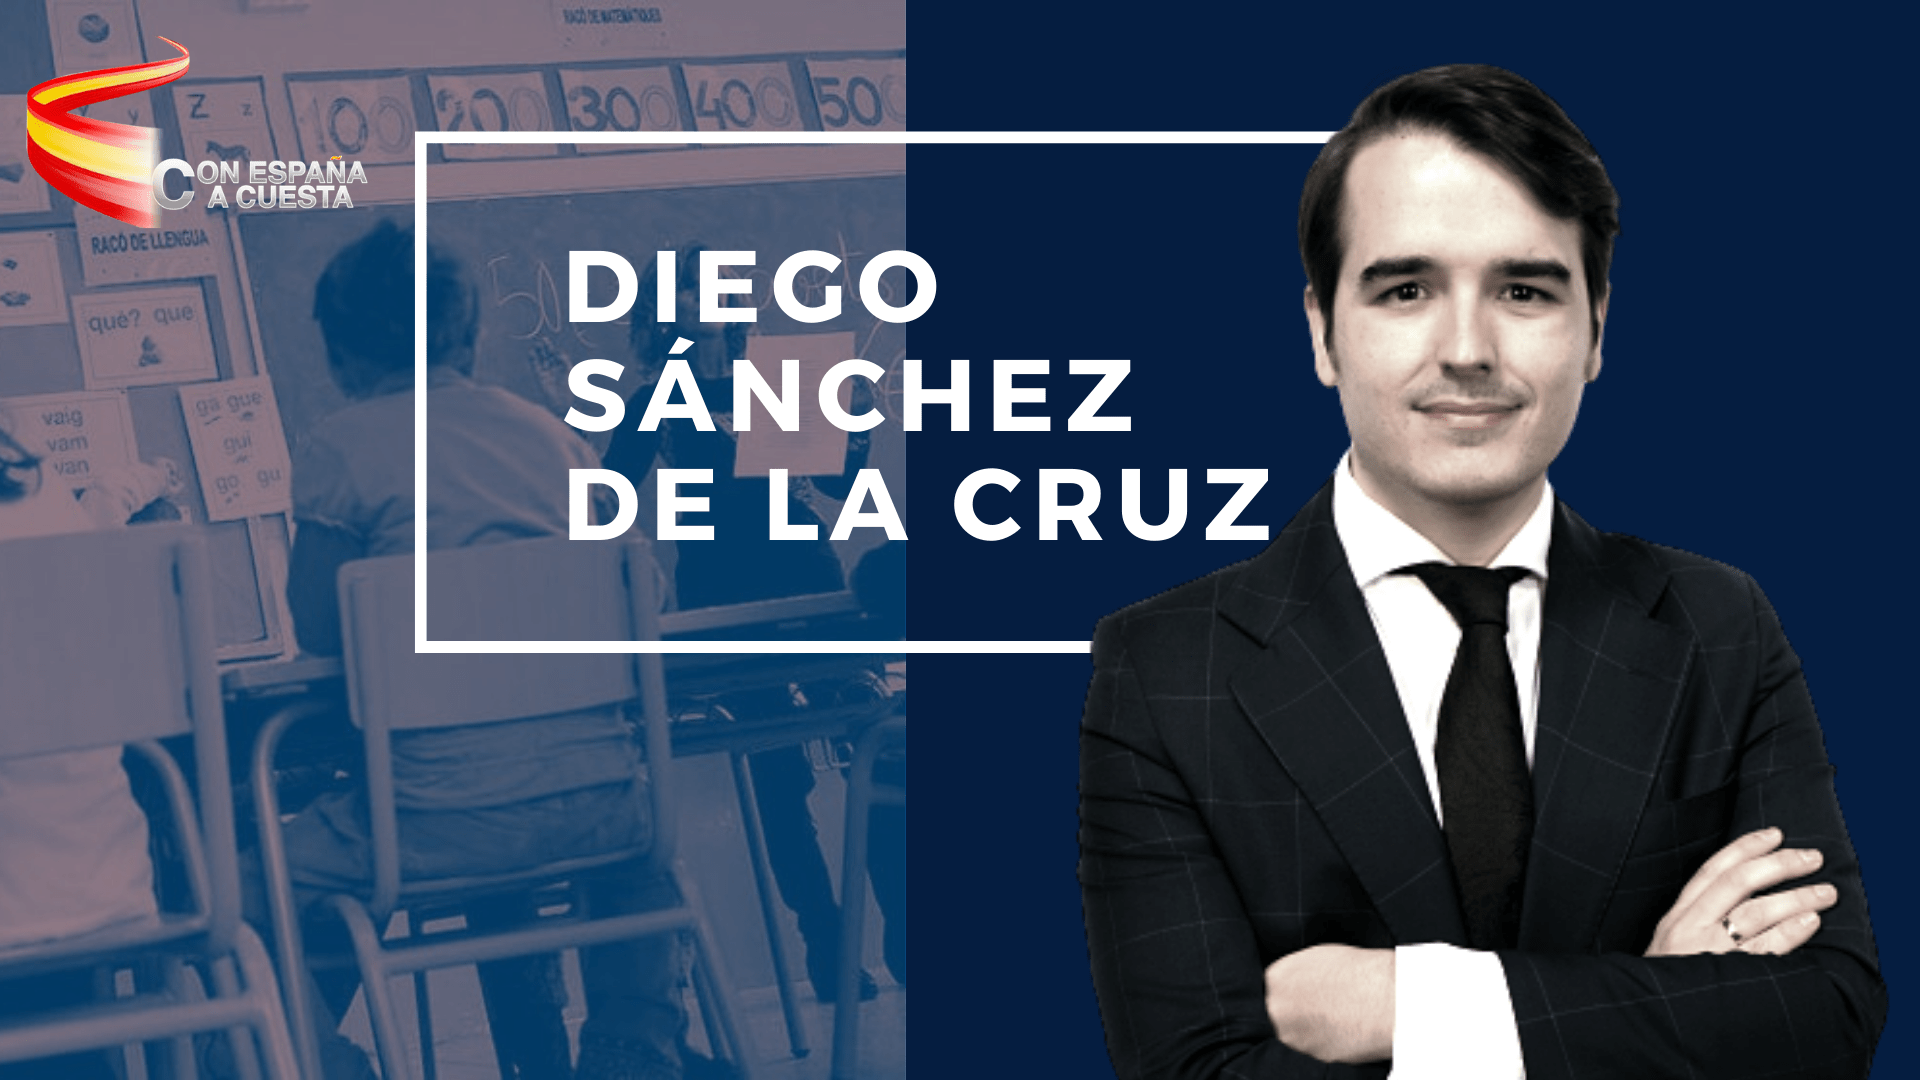 Diego Sánchez de la Cruz